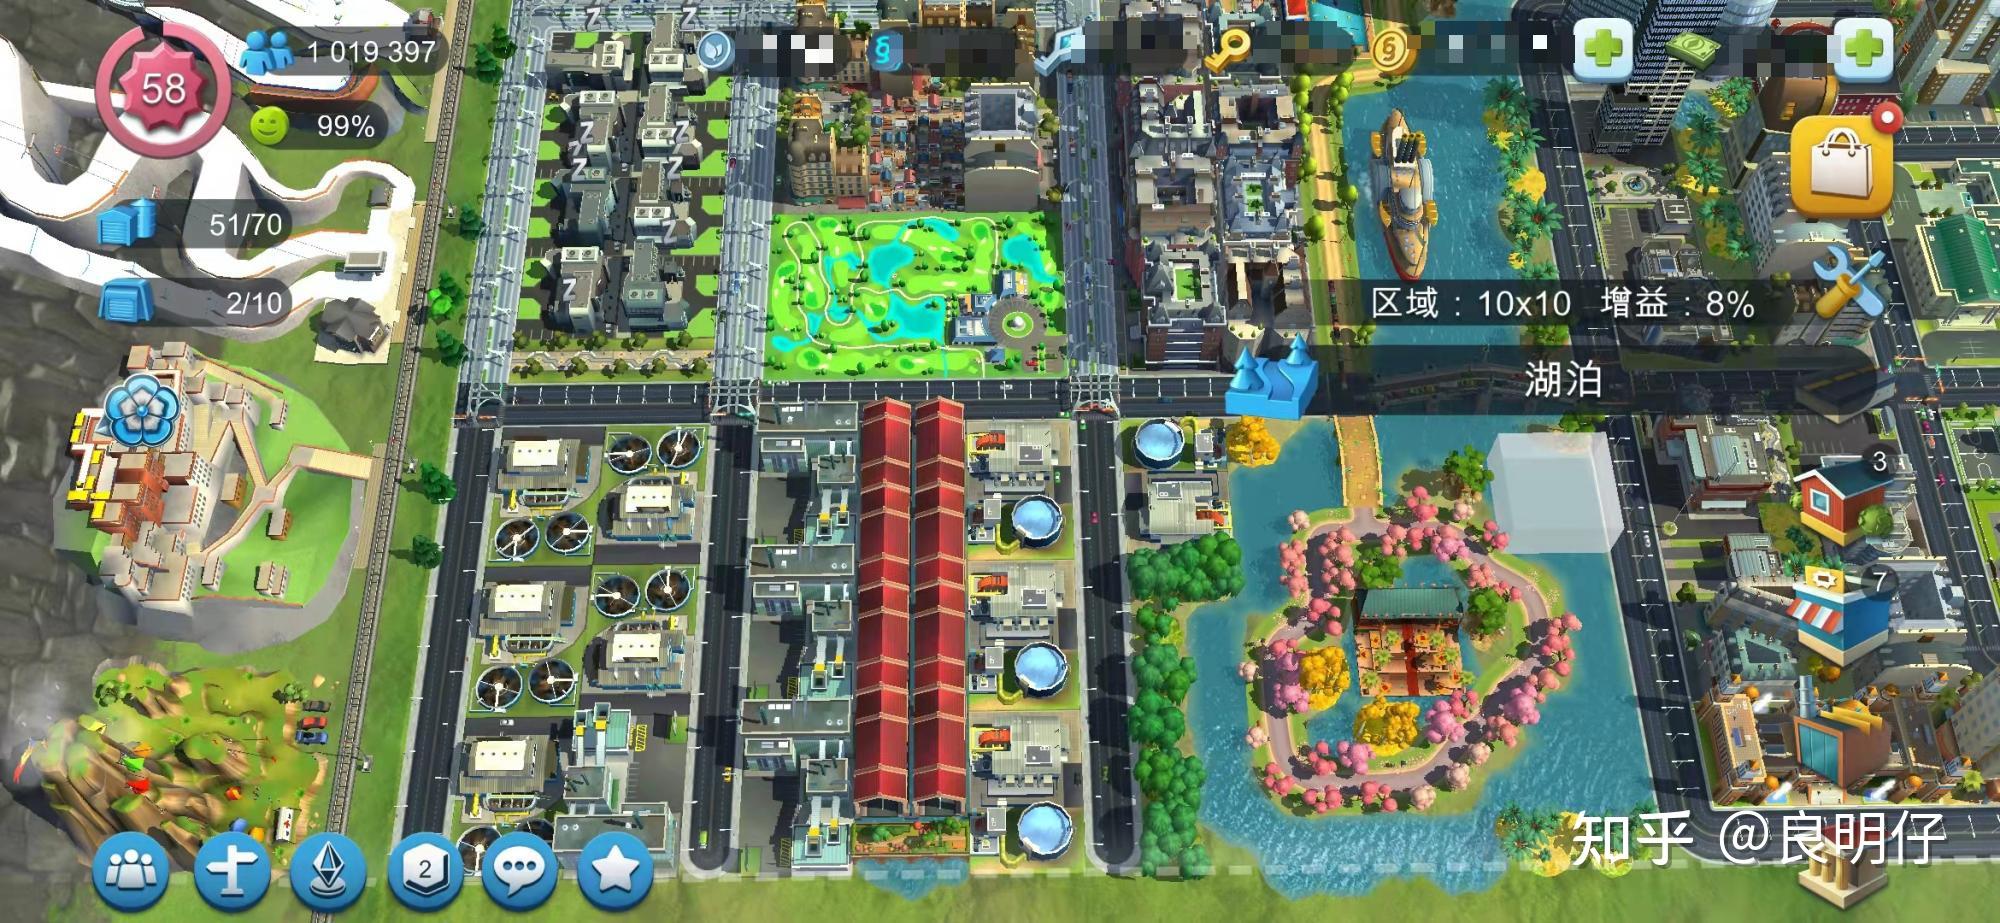 模拟城市我是市长 首都地图5大特色分区   优秀规划